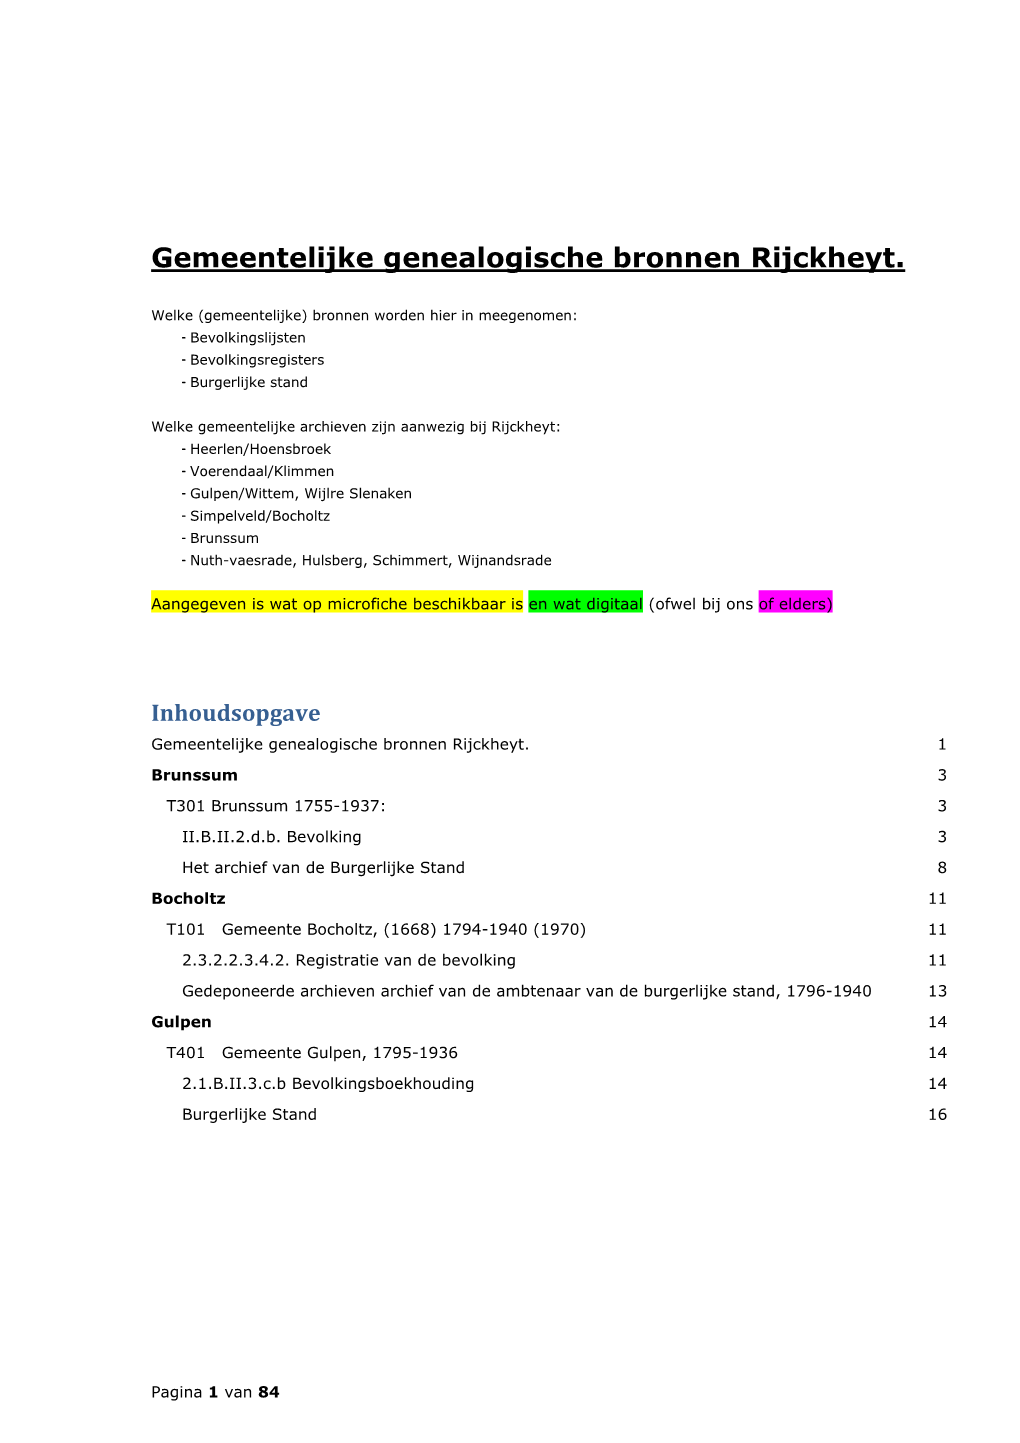 Gemeentelijke Genealogische Bronnen Rijckheyt